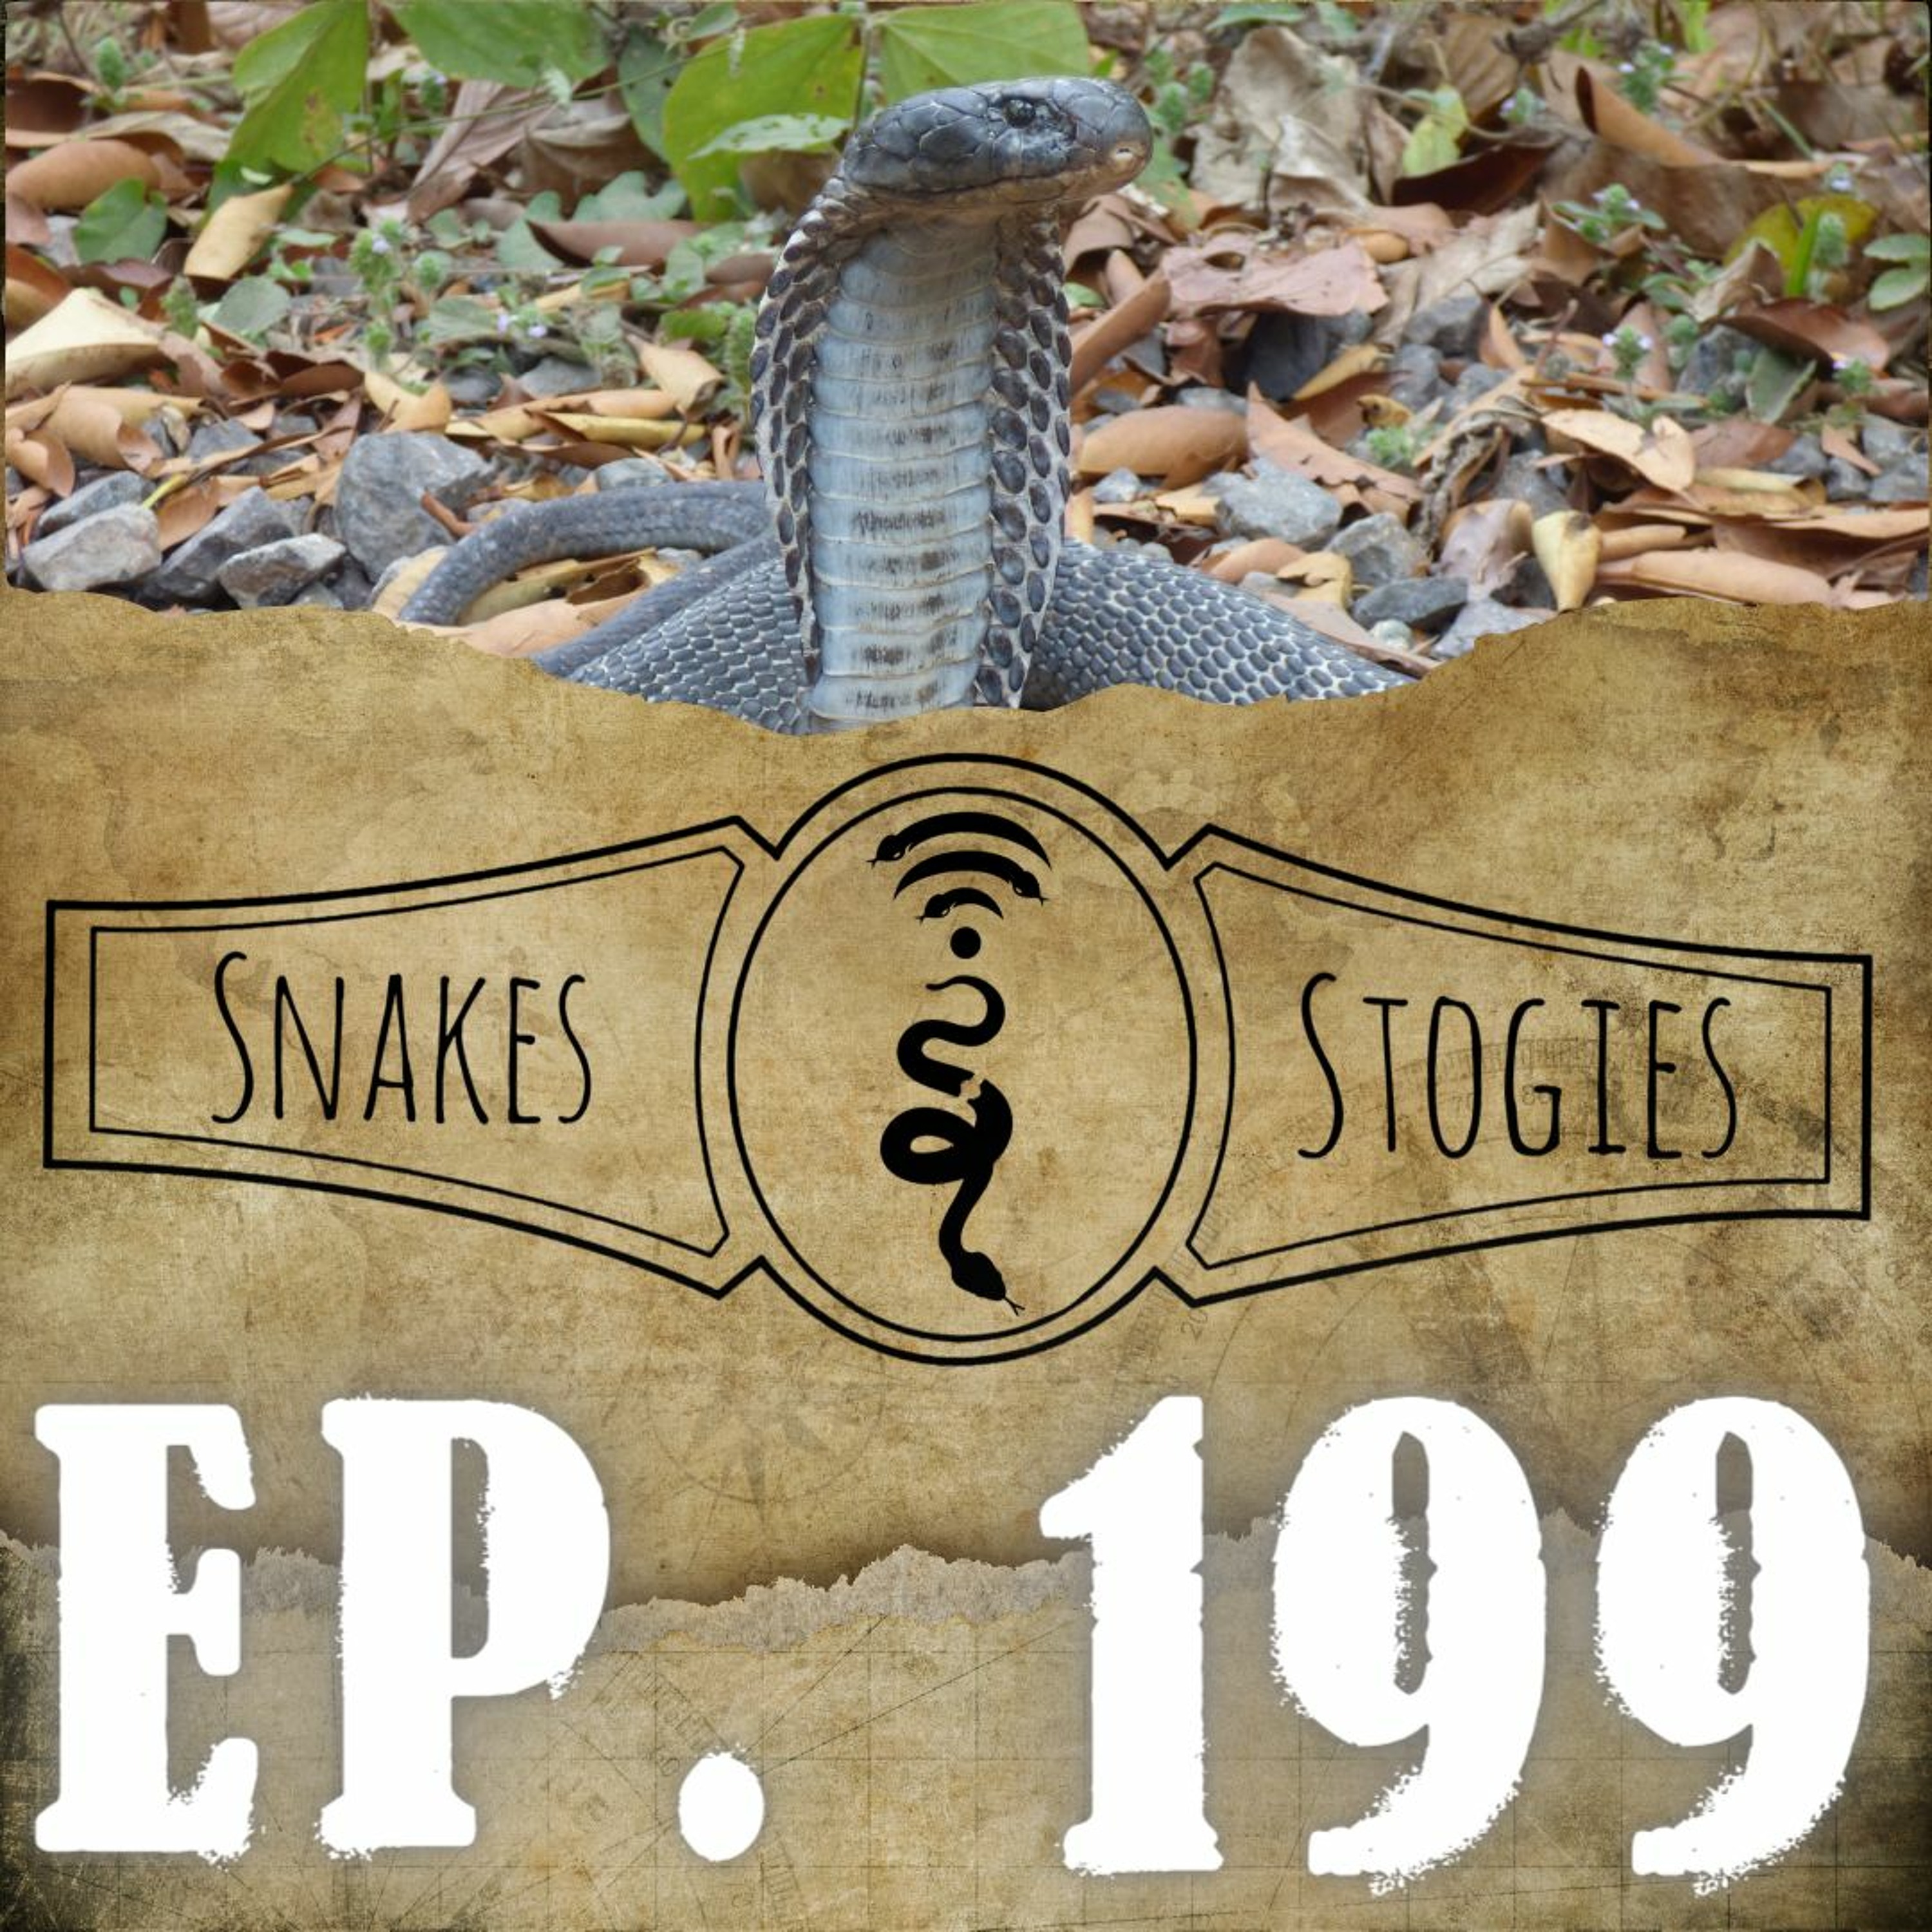 Andaman & Nicobar Islands | Snakes & Stogies Ep. 199